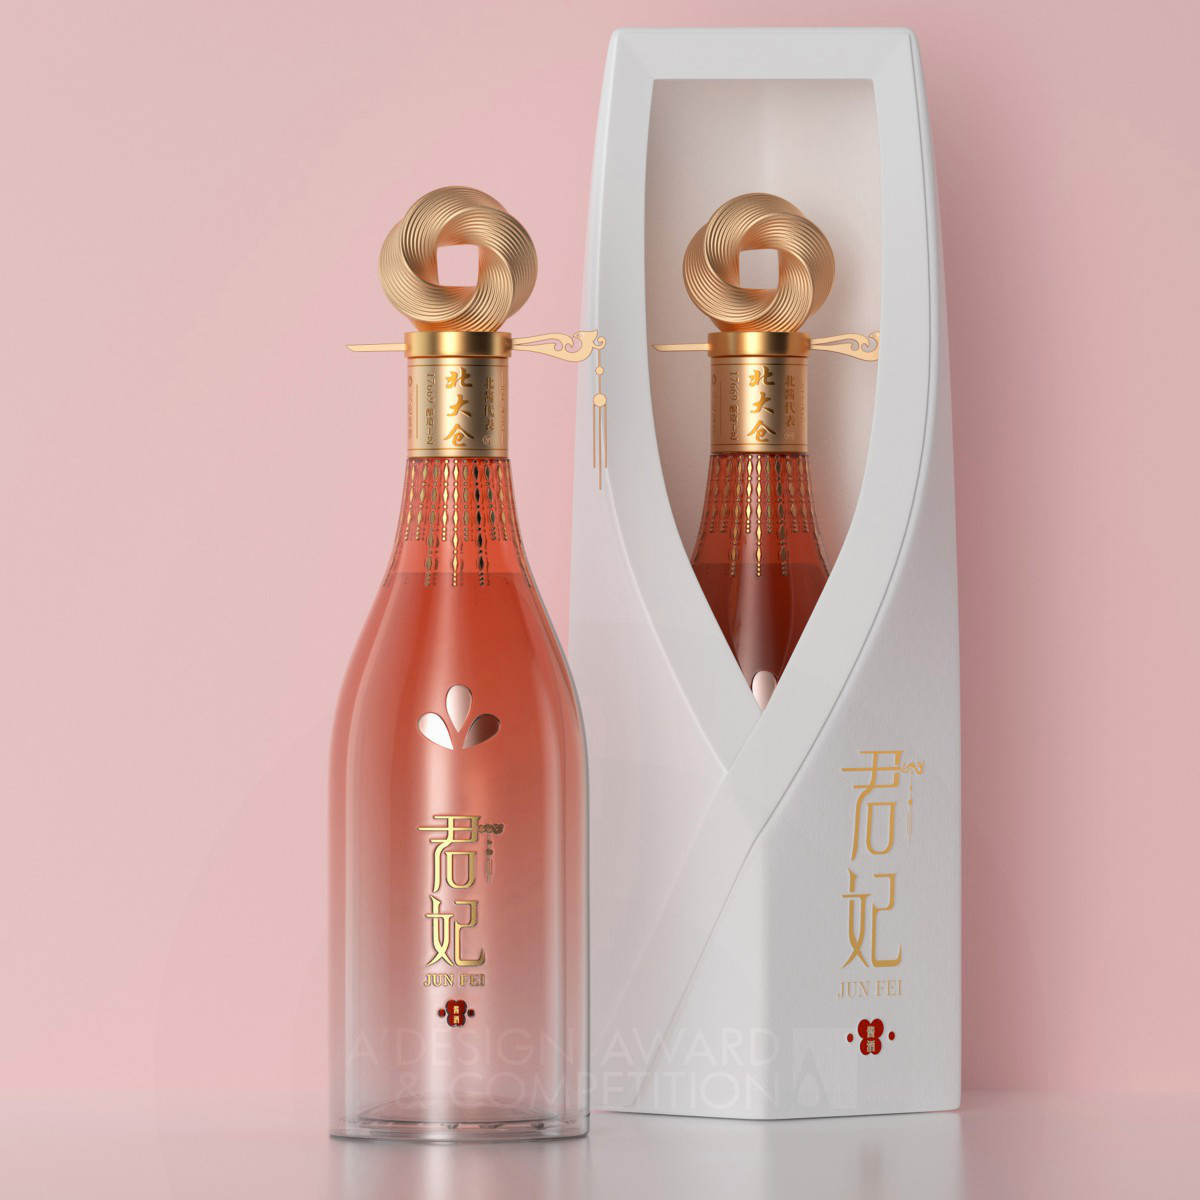 Ji Xing Chuang Yi Liquor Packaging